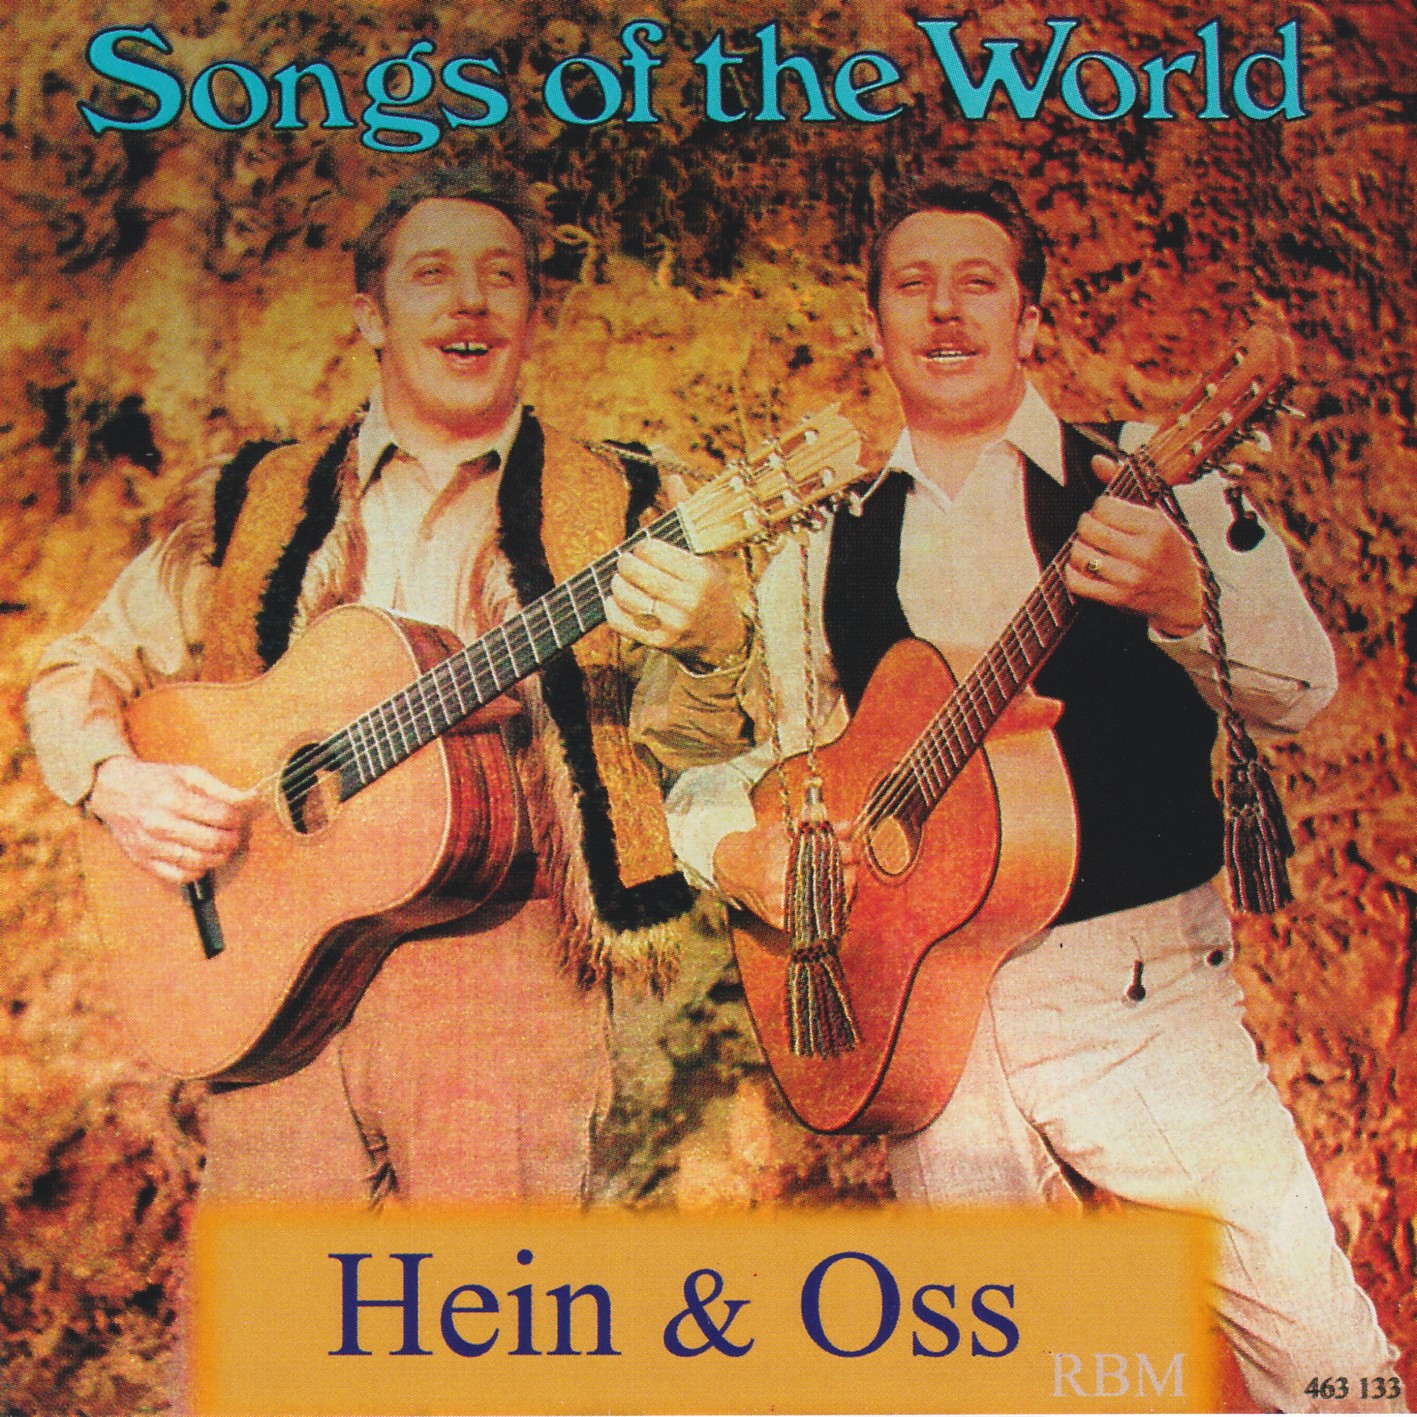 Hein & Oss - Songs of the World